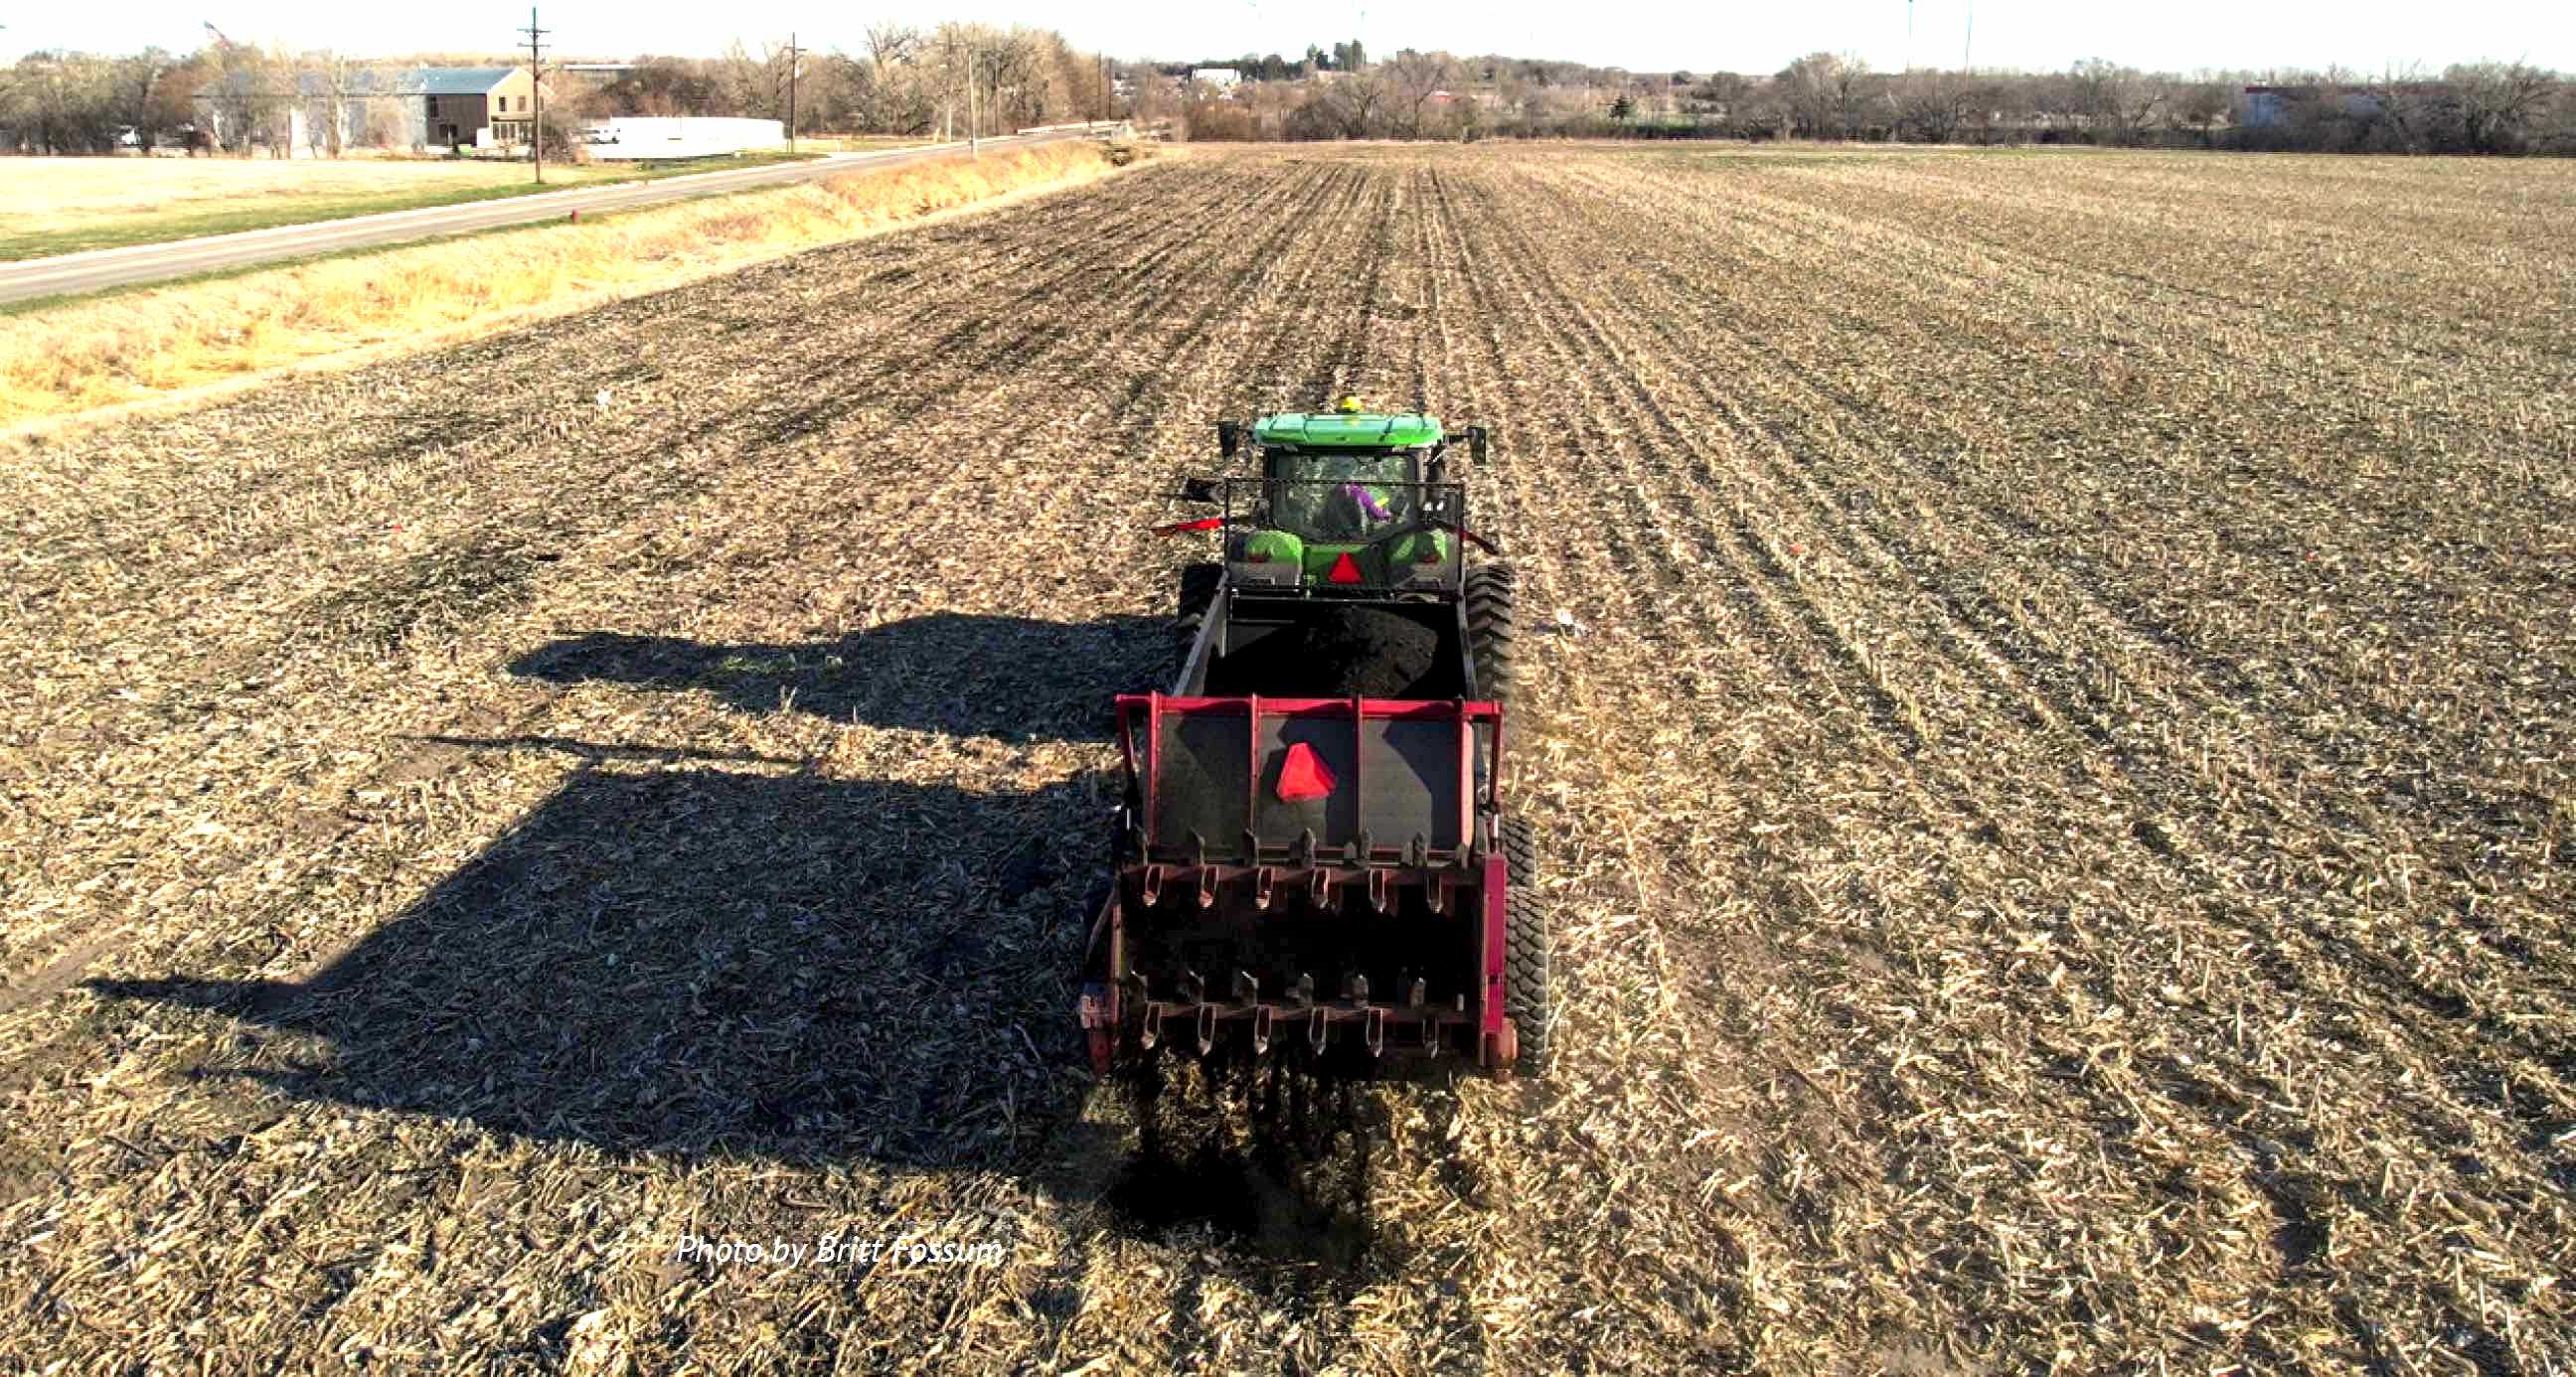 Biochar application by a tractor to open crop field.